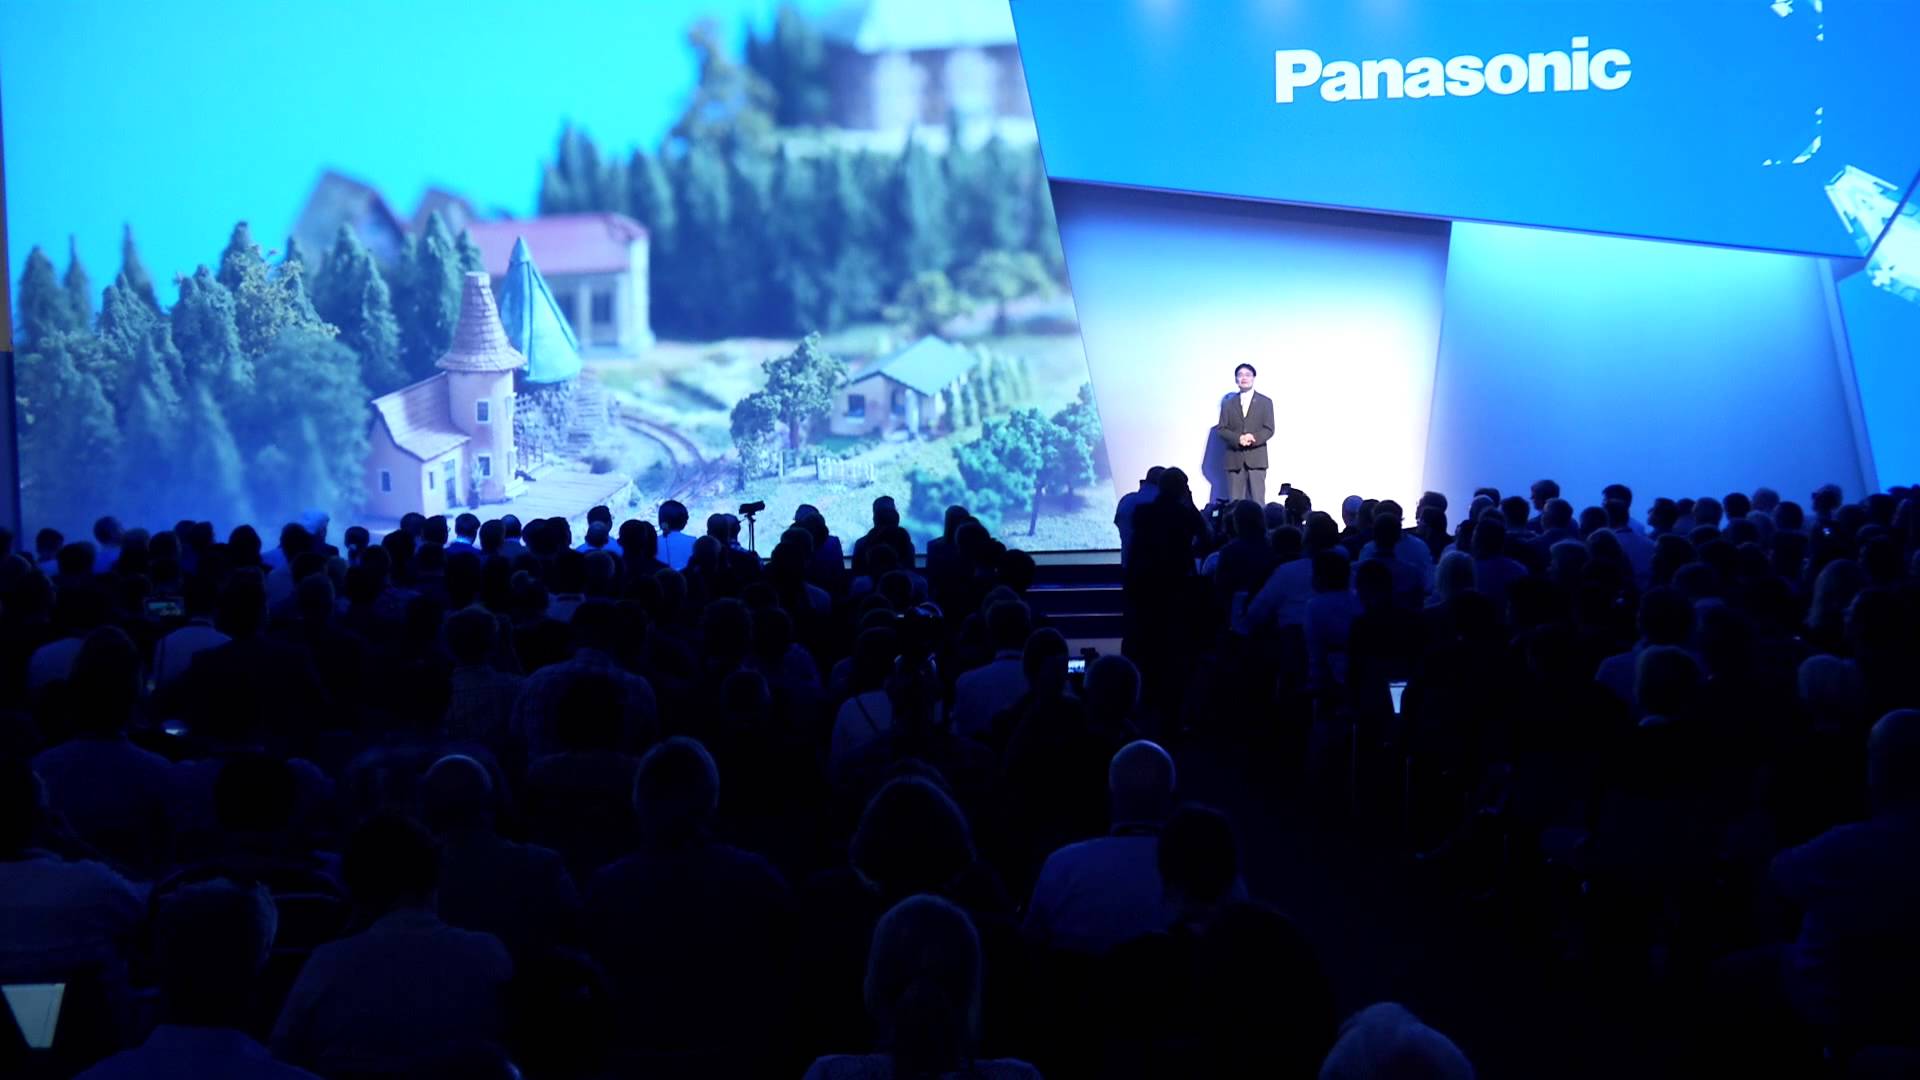 Na żywo – konferencja prasowa Panasonic na IFA 2016